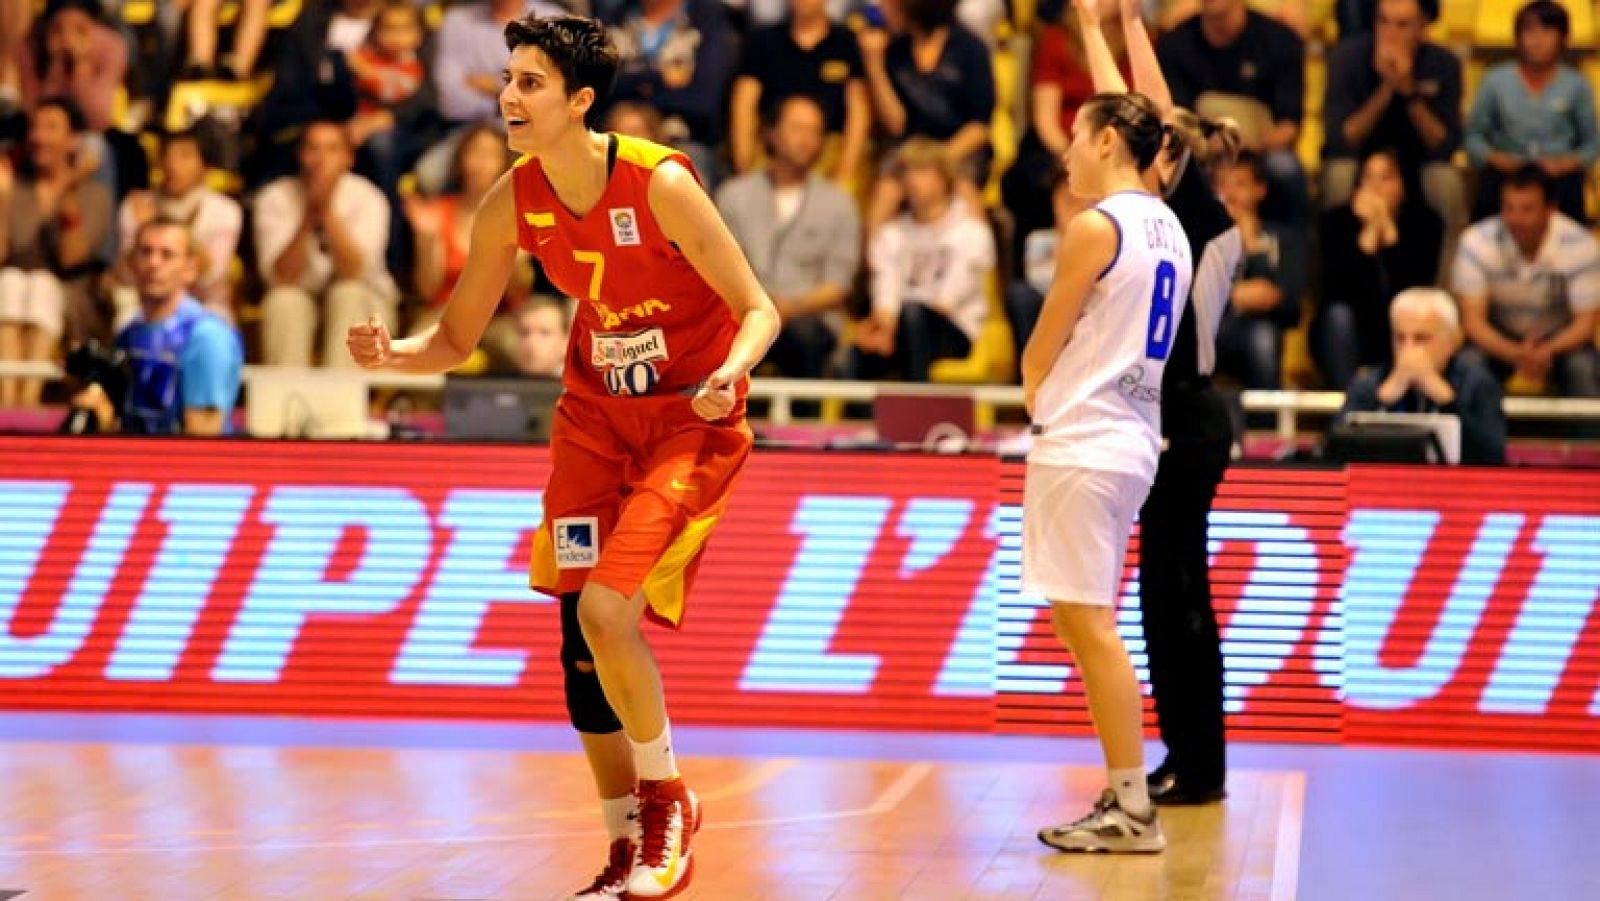 España apunta a ser primera del grupo B del Eurobasket femenino de Francia tras vencer a Italia en Vannes, con un extraordinario encuentro de Sancho Lyttle que sumó 19 puntos, 13 rebotes y 3 asistencias. Las jugadoras españolas fueron superiores a lo